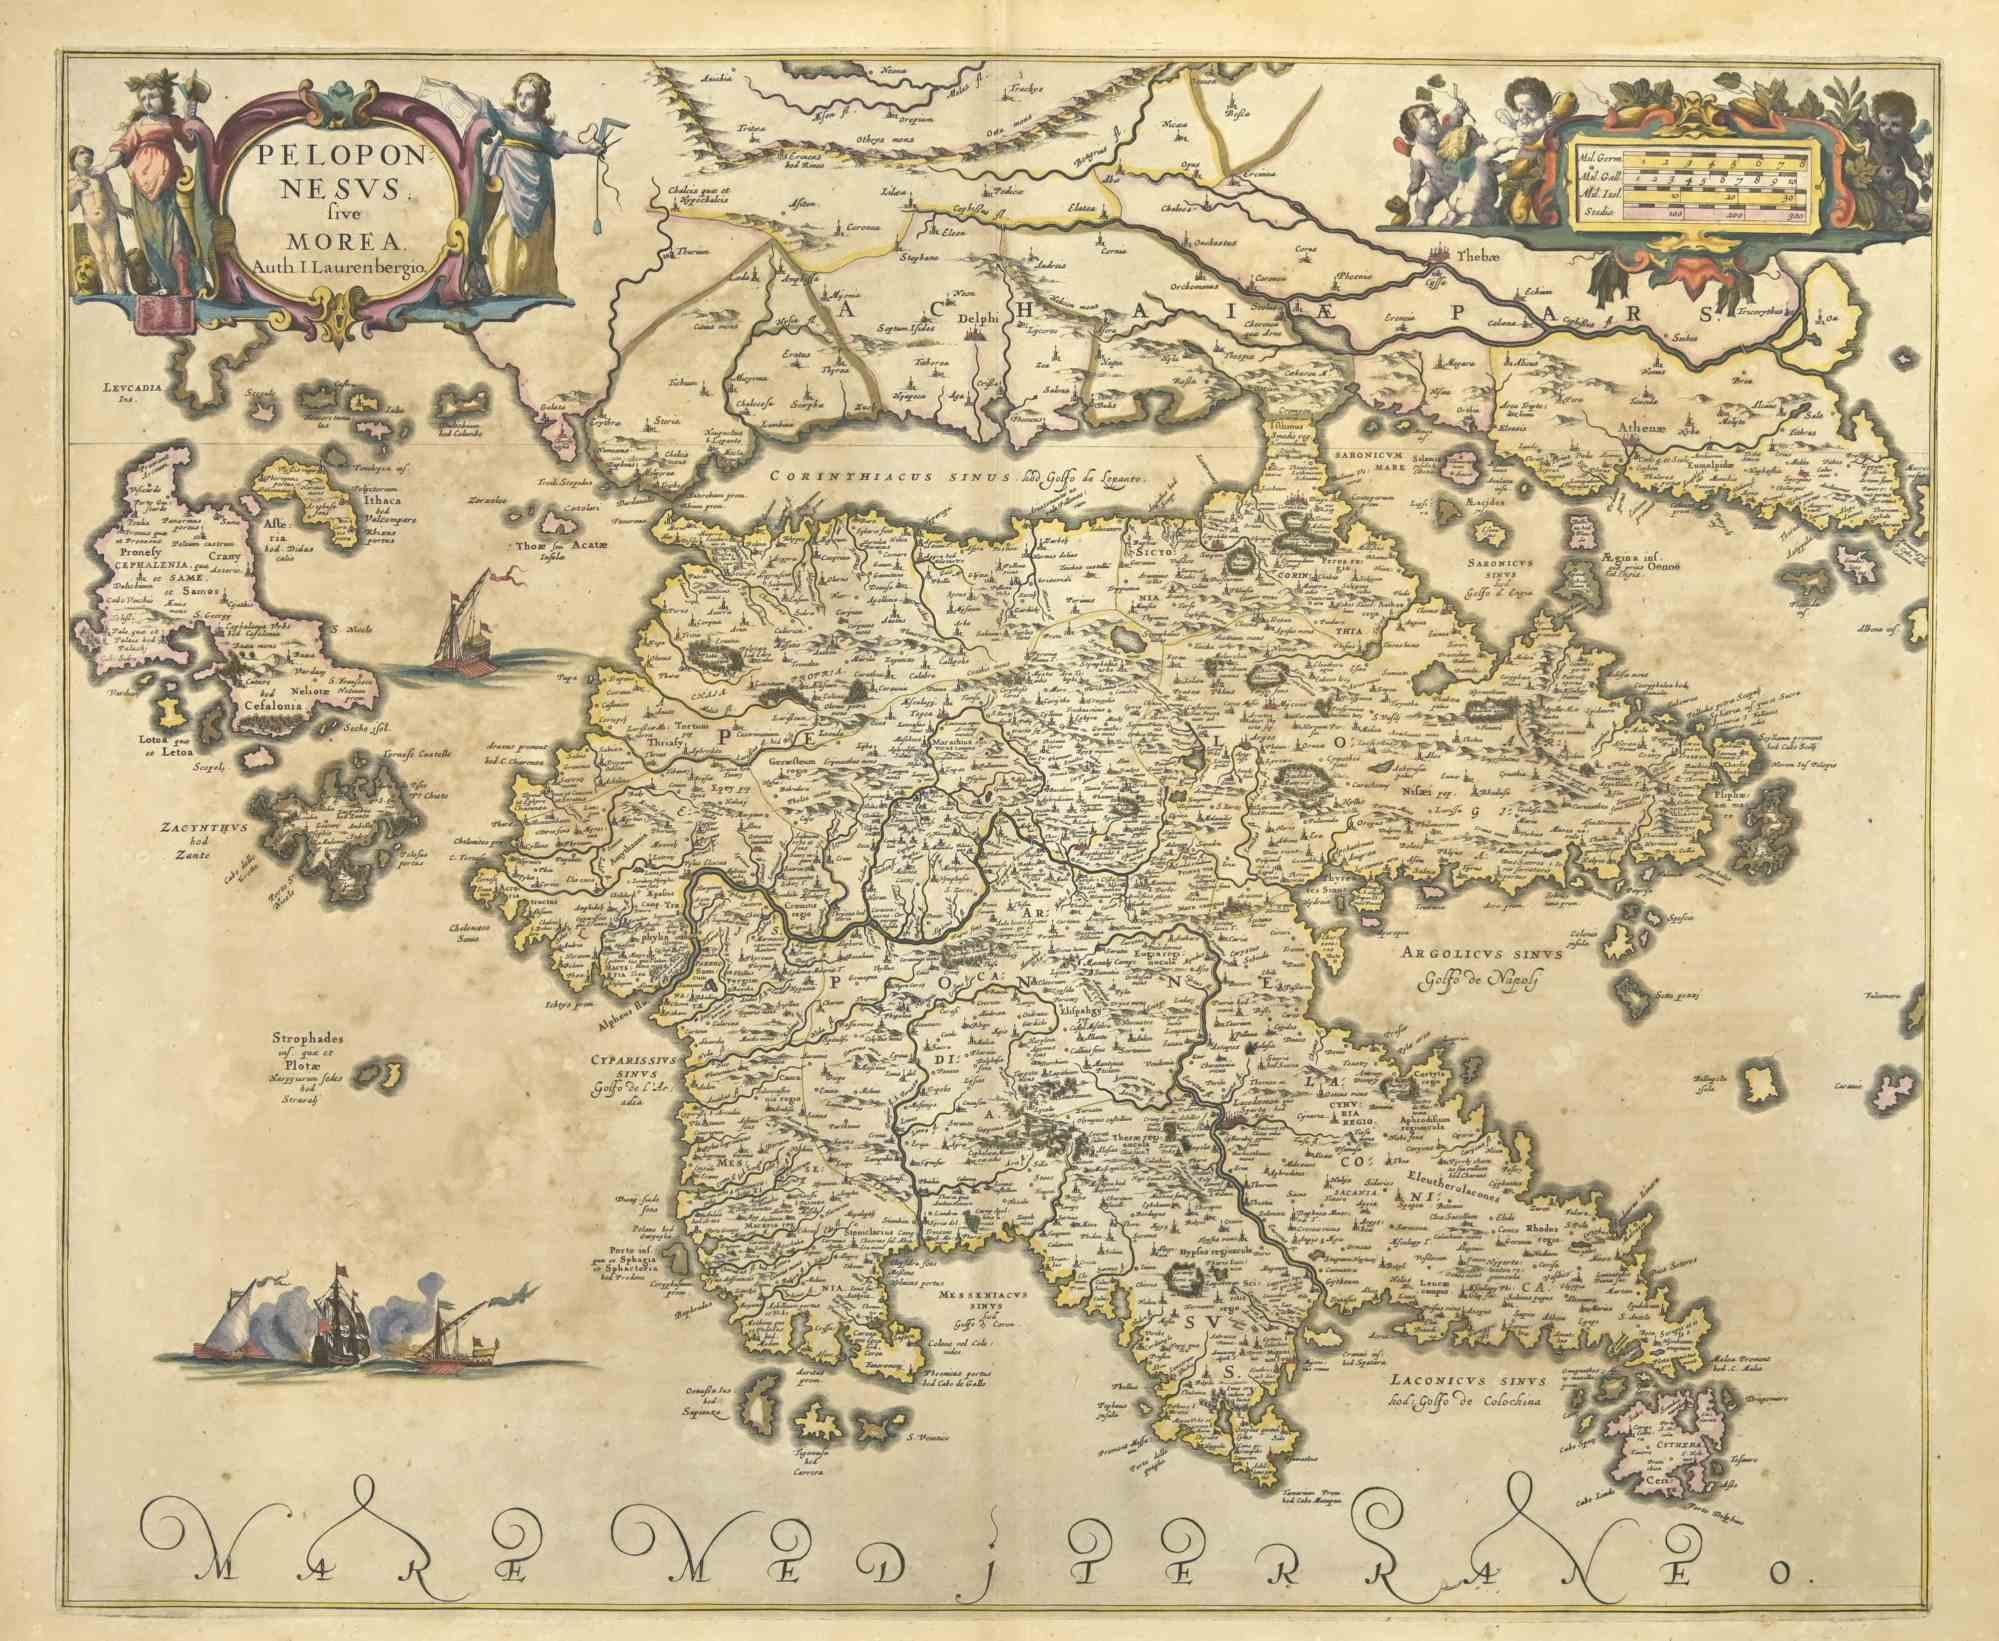 Peloponnesvs est une carte ancienne réalisée en 1650 par Johannes Janssonius (1588-1664).

La carte est une gravure à l'eau-forte coloriée à la main, avec aquarelle au même moment.

Bon état avec de légères rousseurs.

De Atlantis majoris quinta